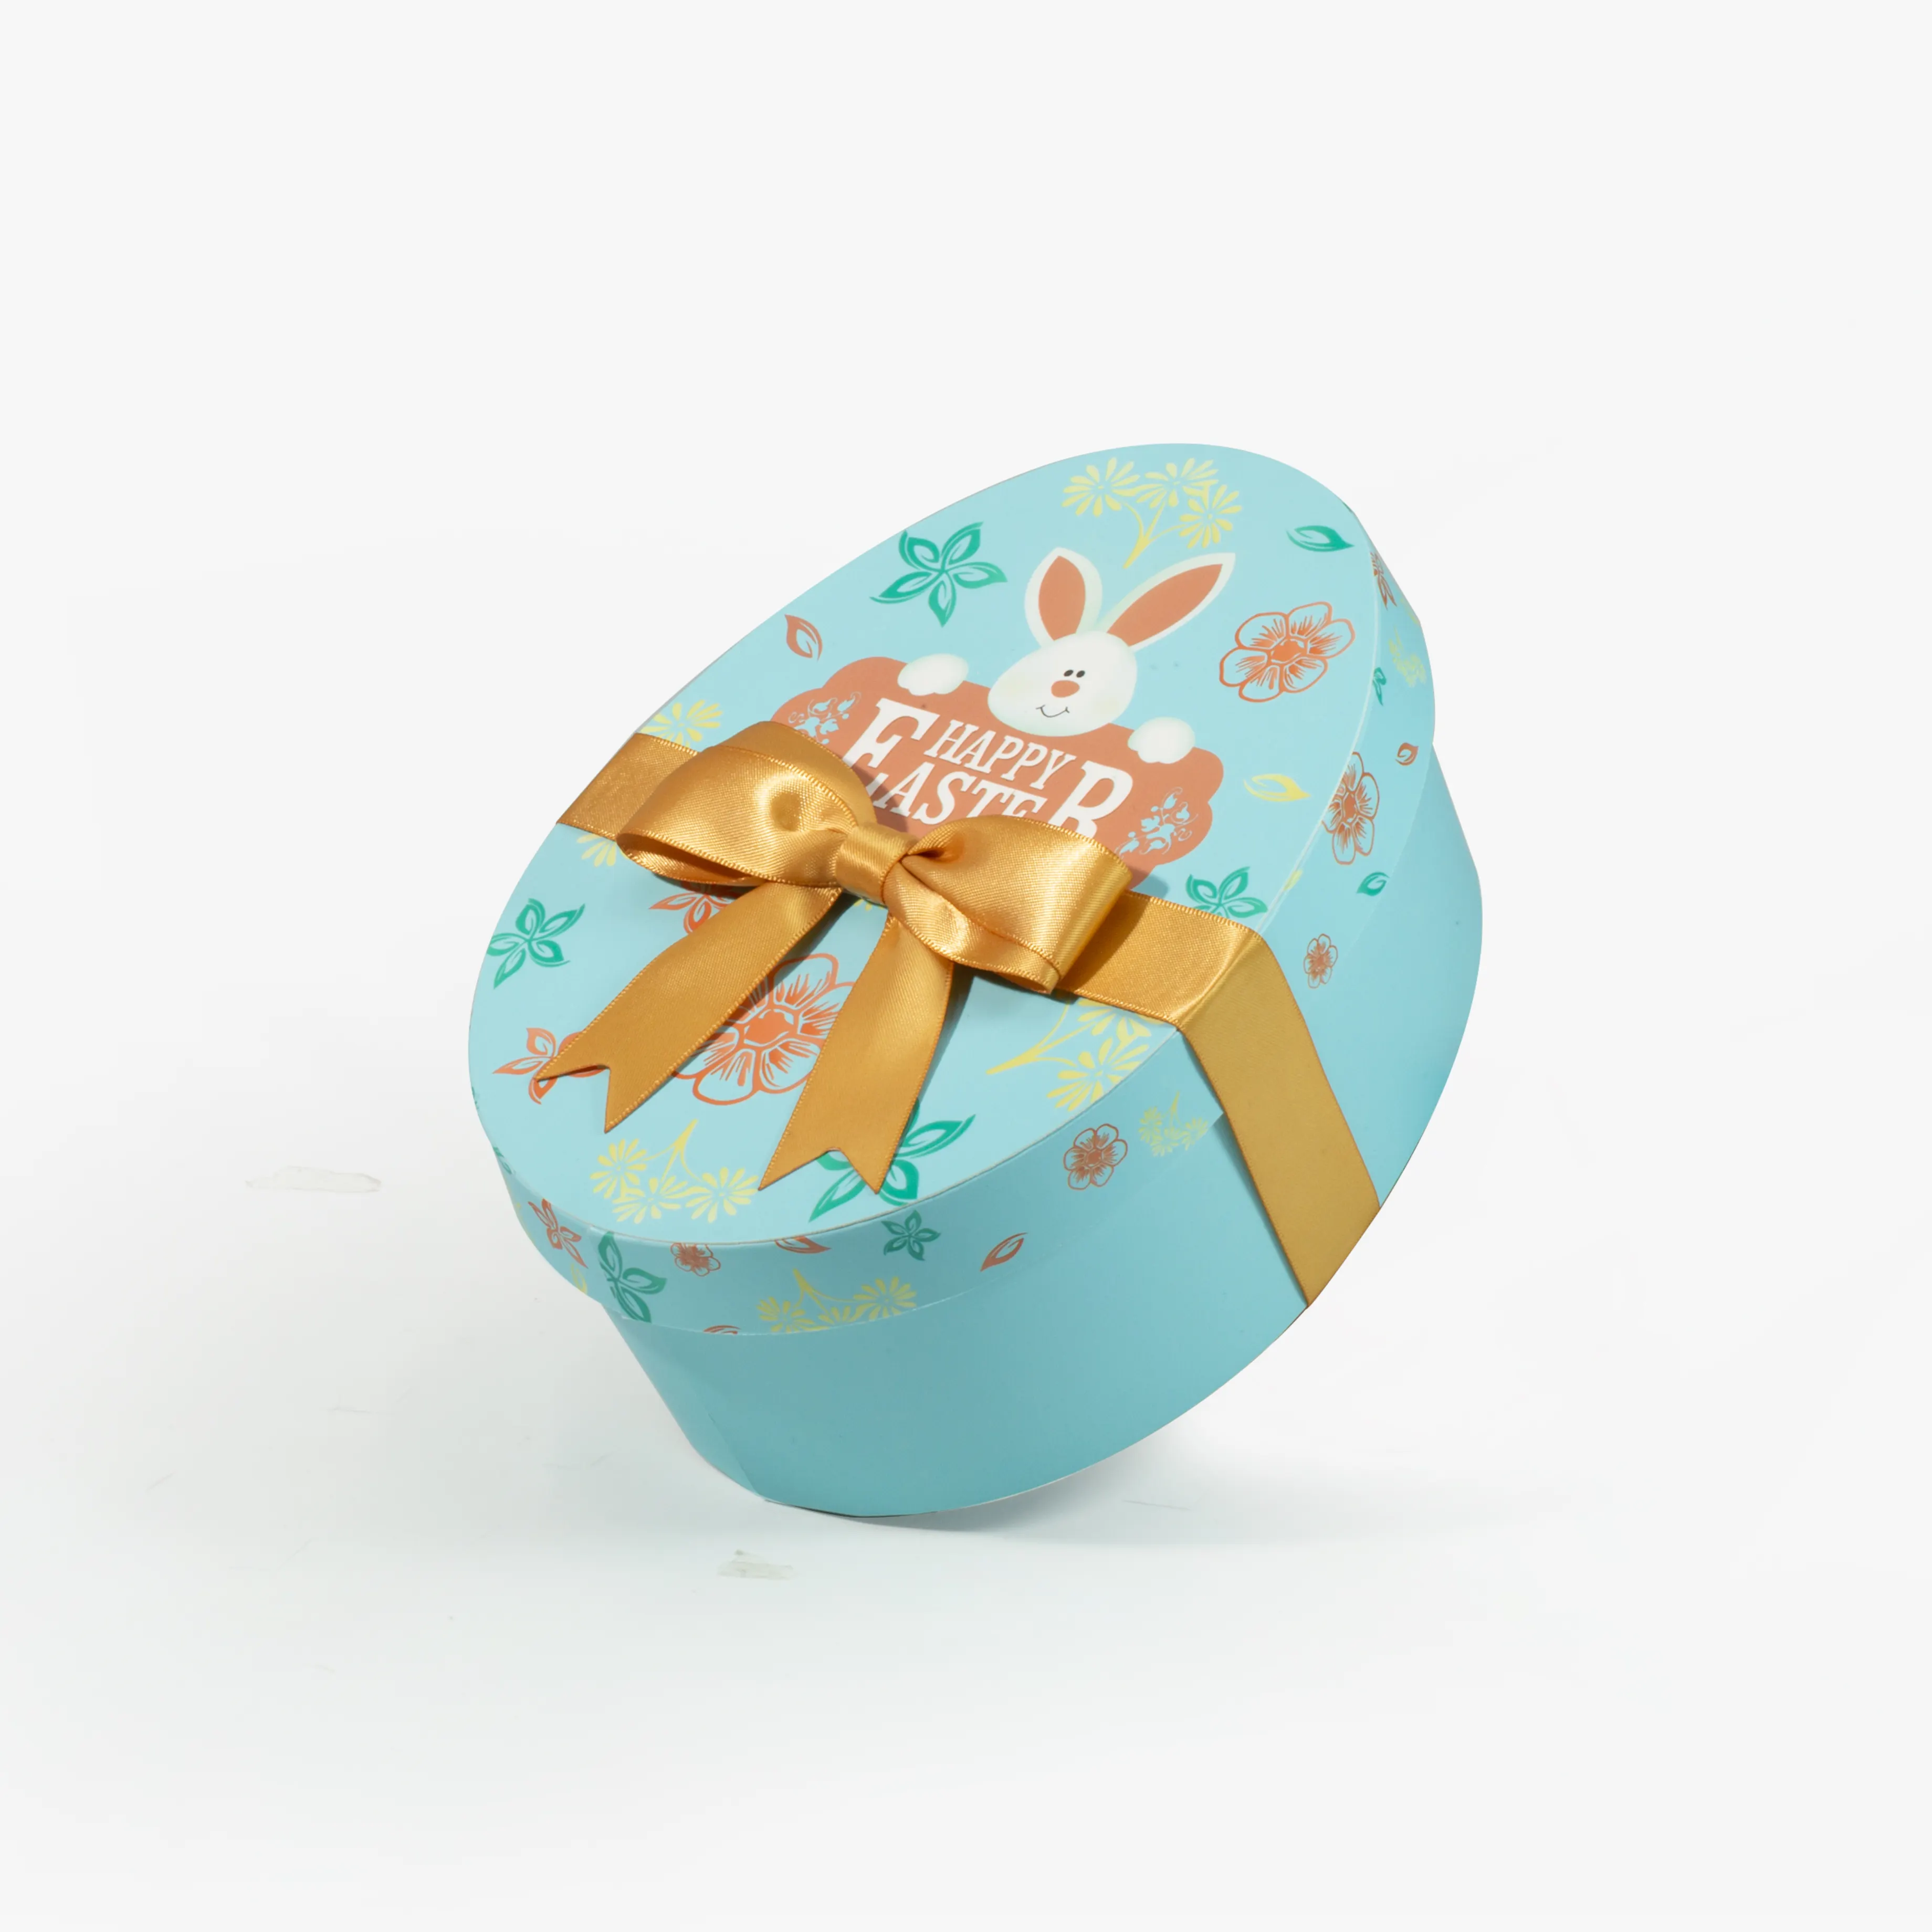 หรูหรามีความสุขวันอีสเตอร์สีฟ้าไข่อีสเตอร์รูปร่างกล่องของขวัญฝาและกล่องฐาน